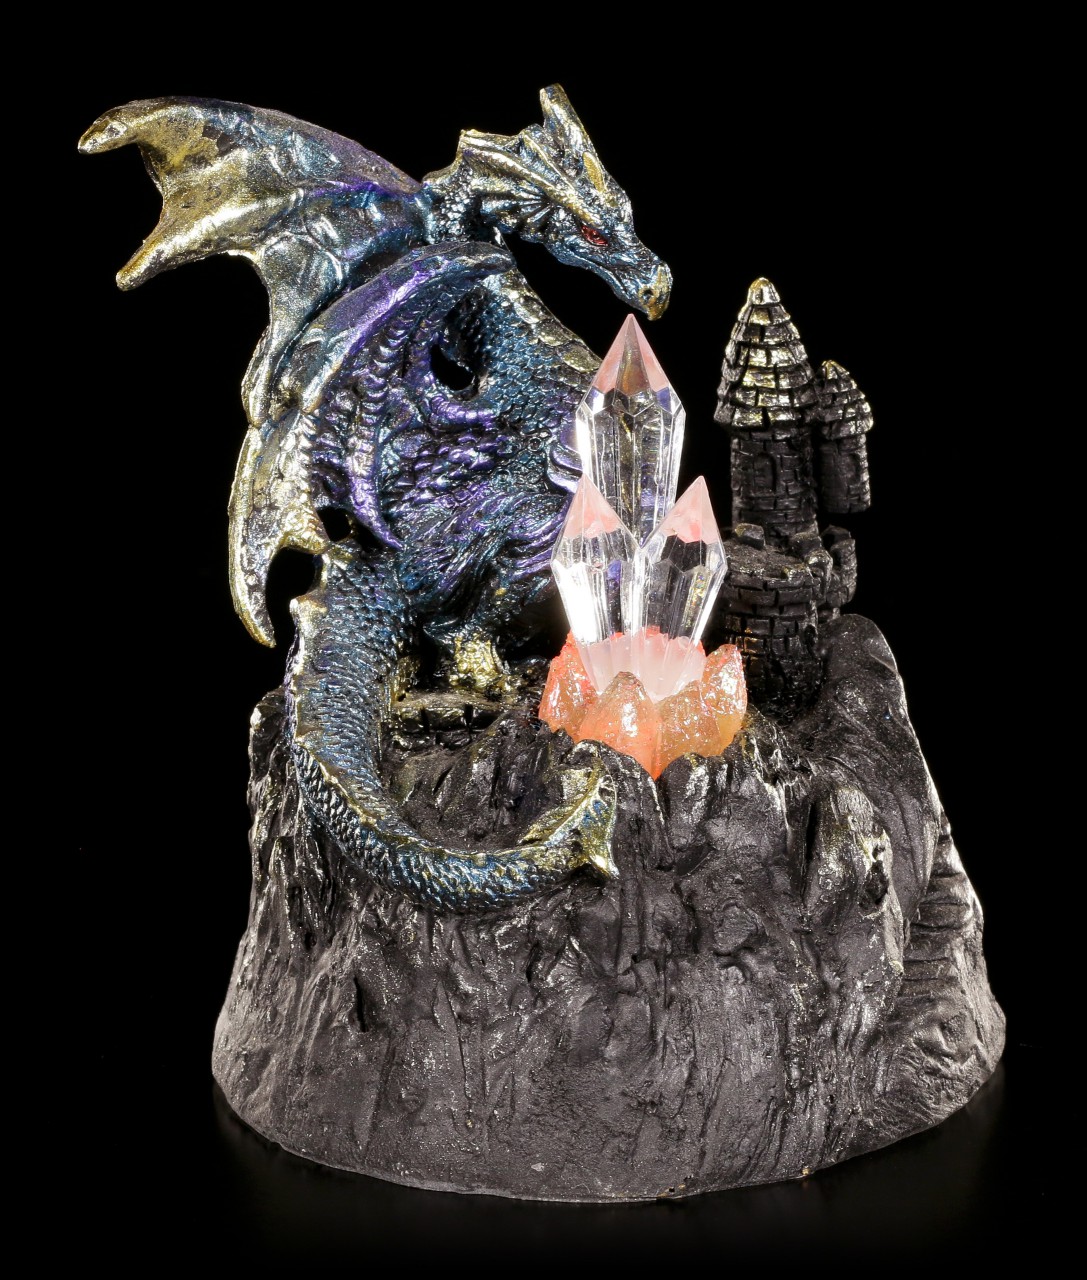 Blaue Drachen Figur auf Burg mit Kristall und LED